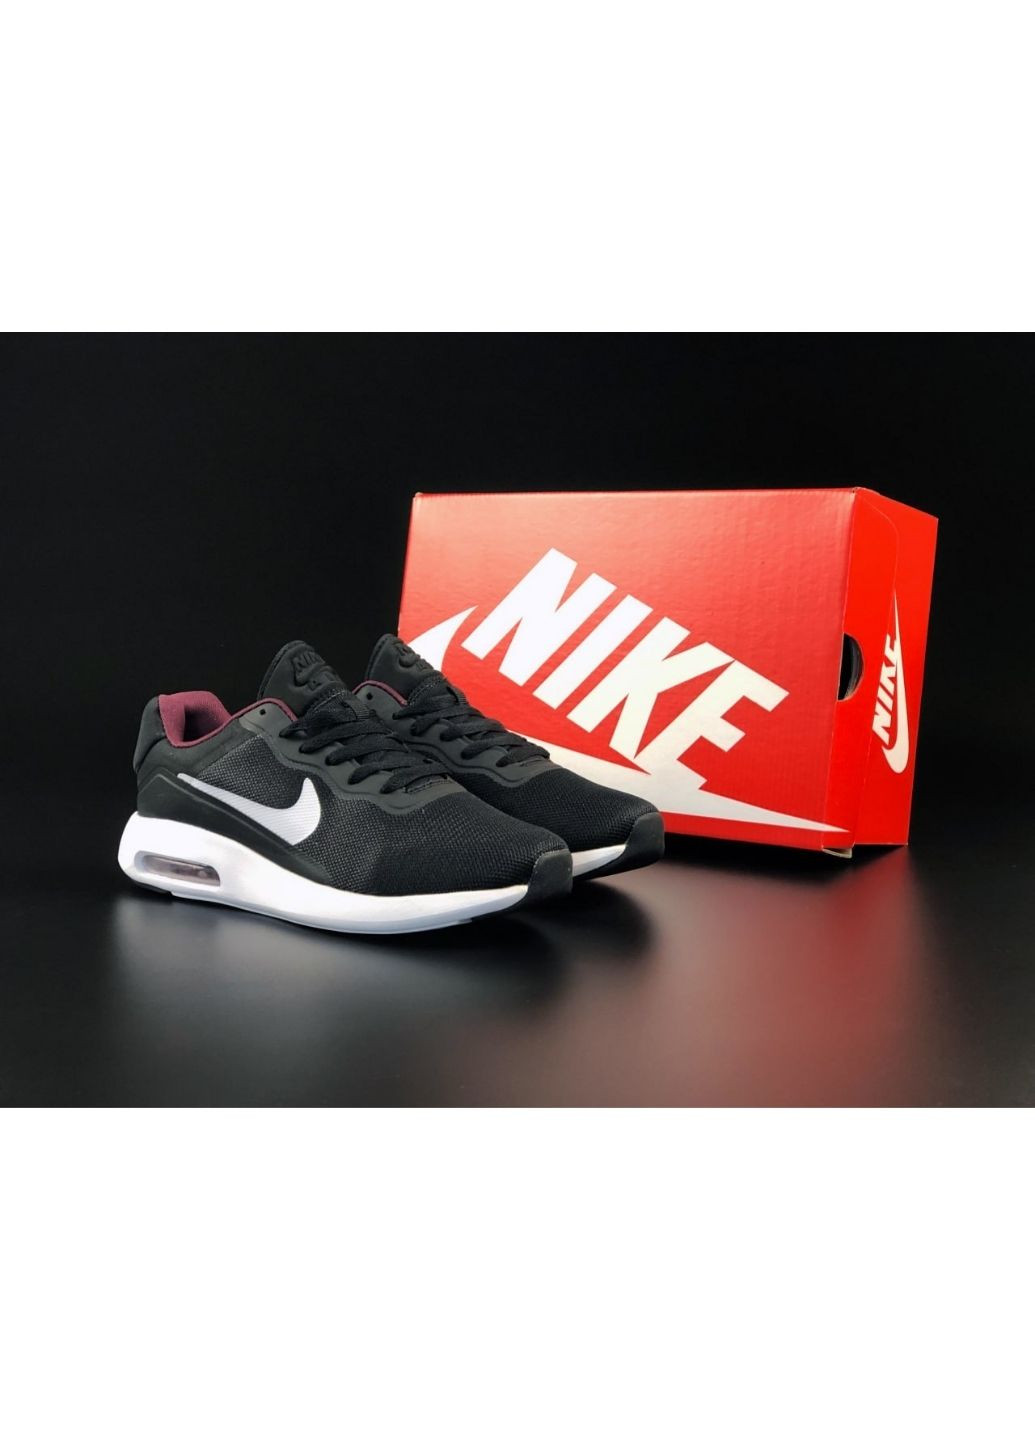 Черно-белые демисезонные мужские кроссовки черные с белым «no name» Nike